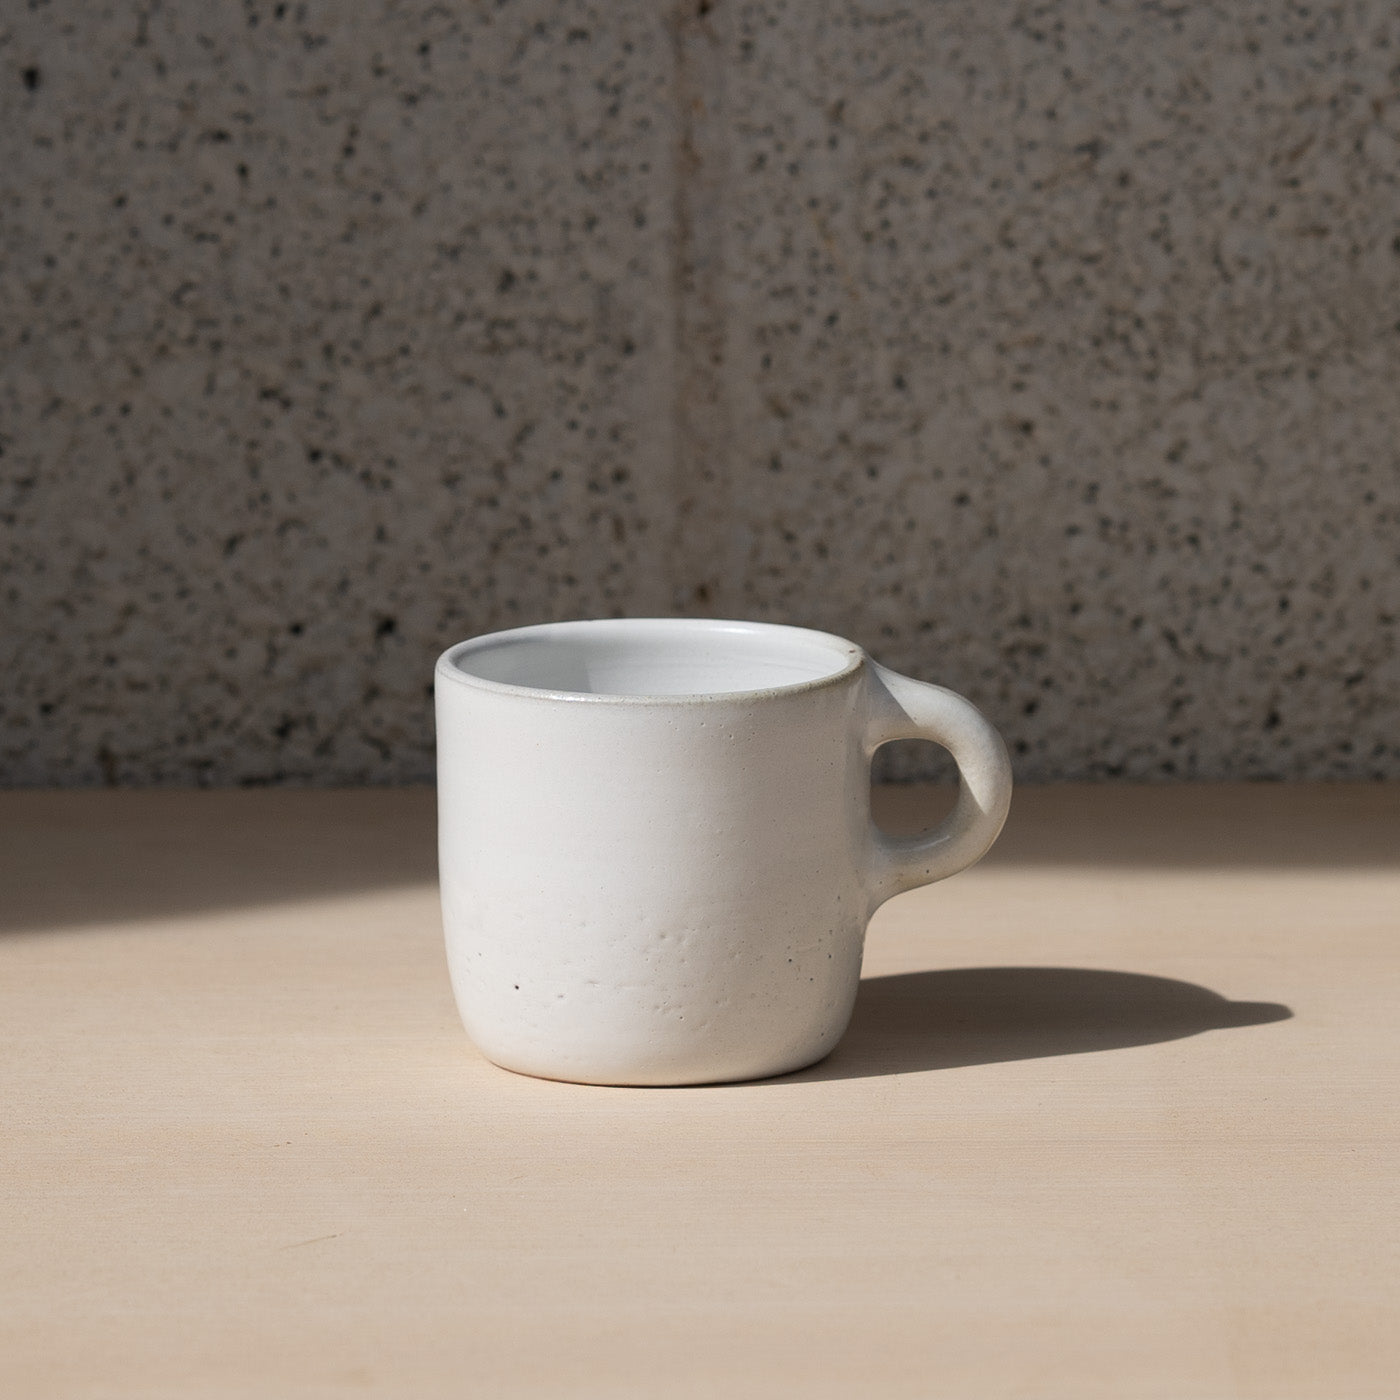 Ivory White ceramic mug by Gaëlle Le Doledec